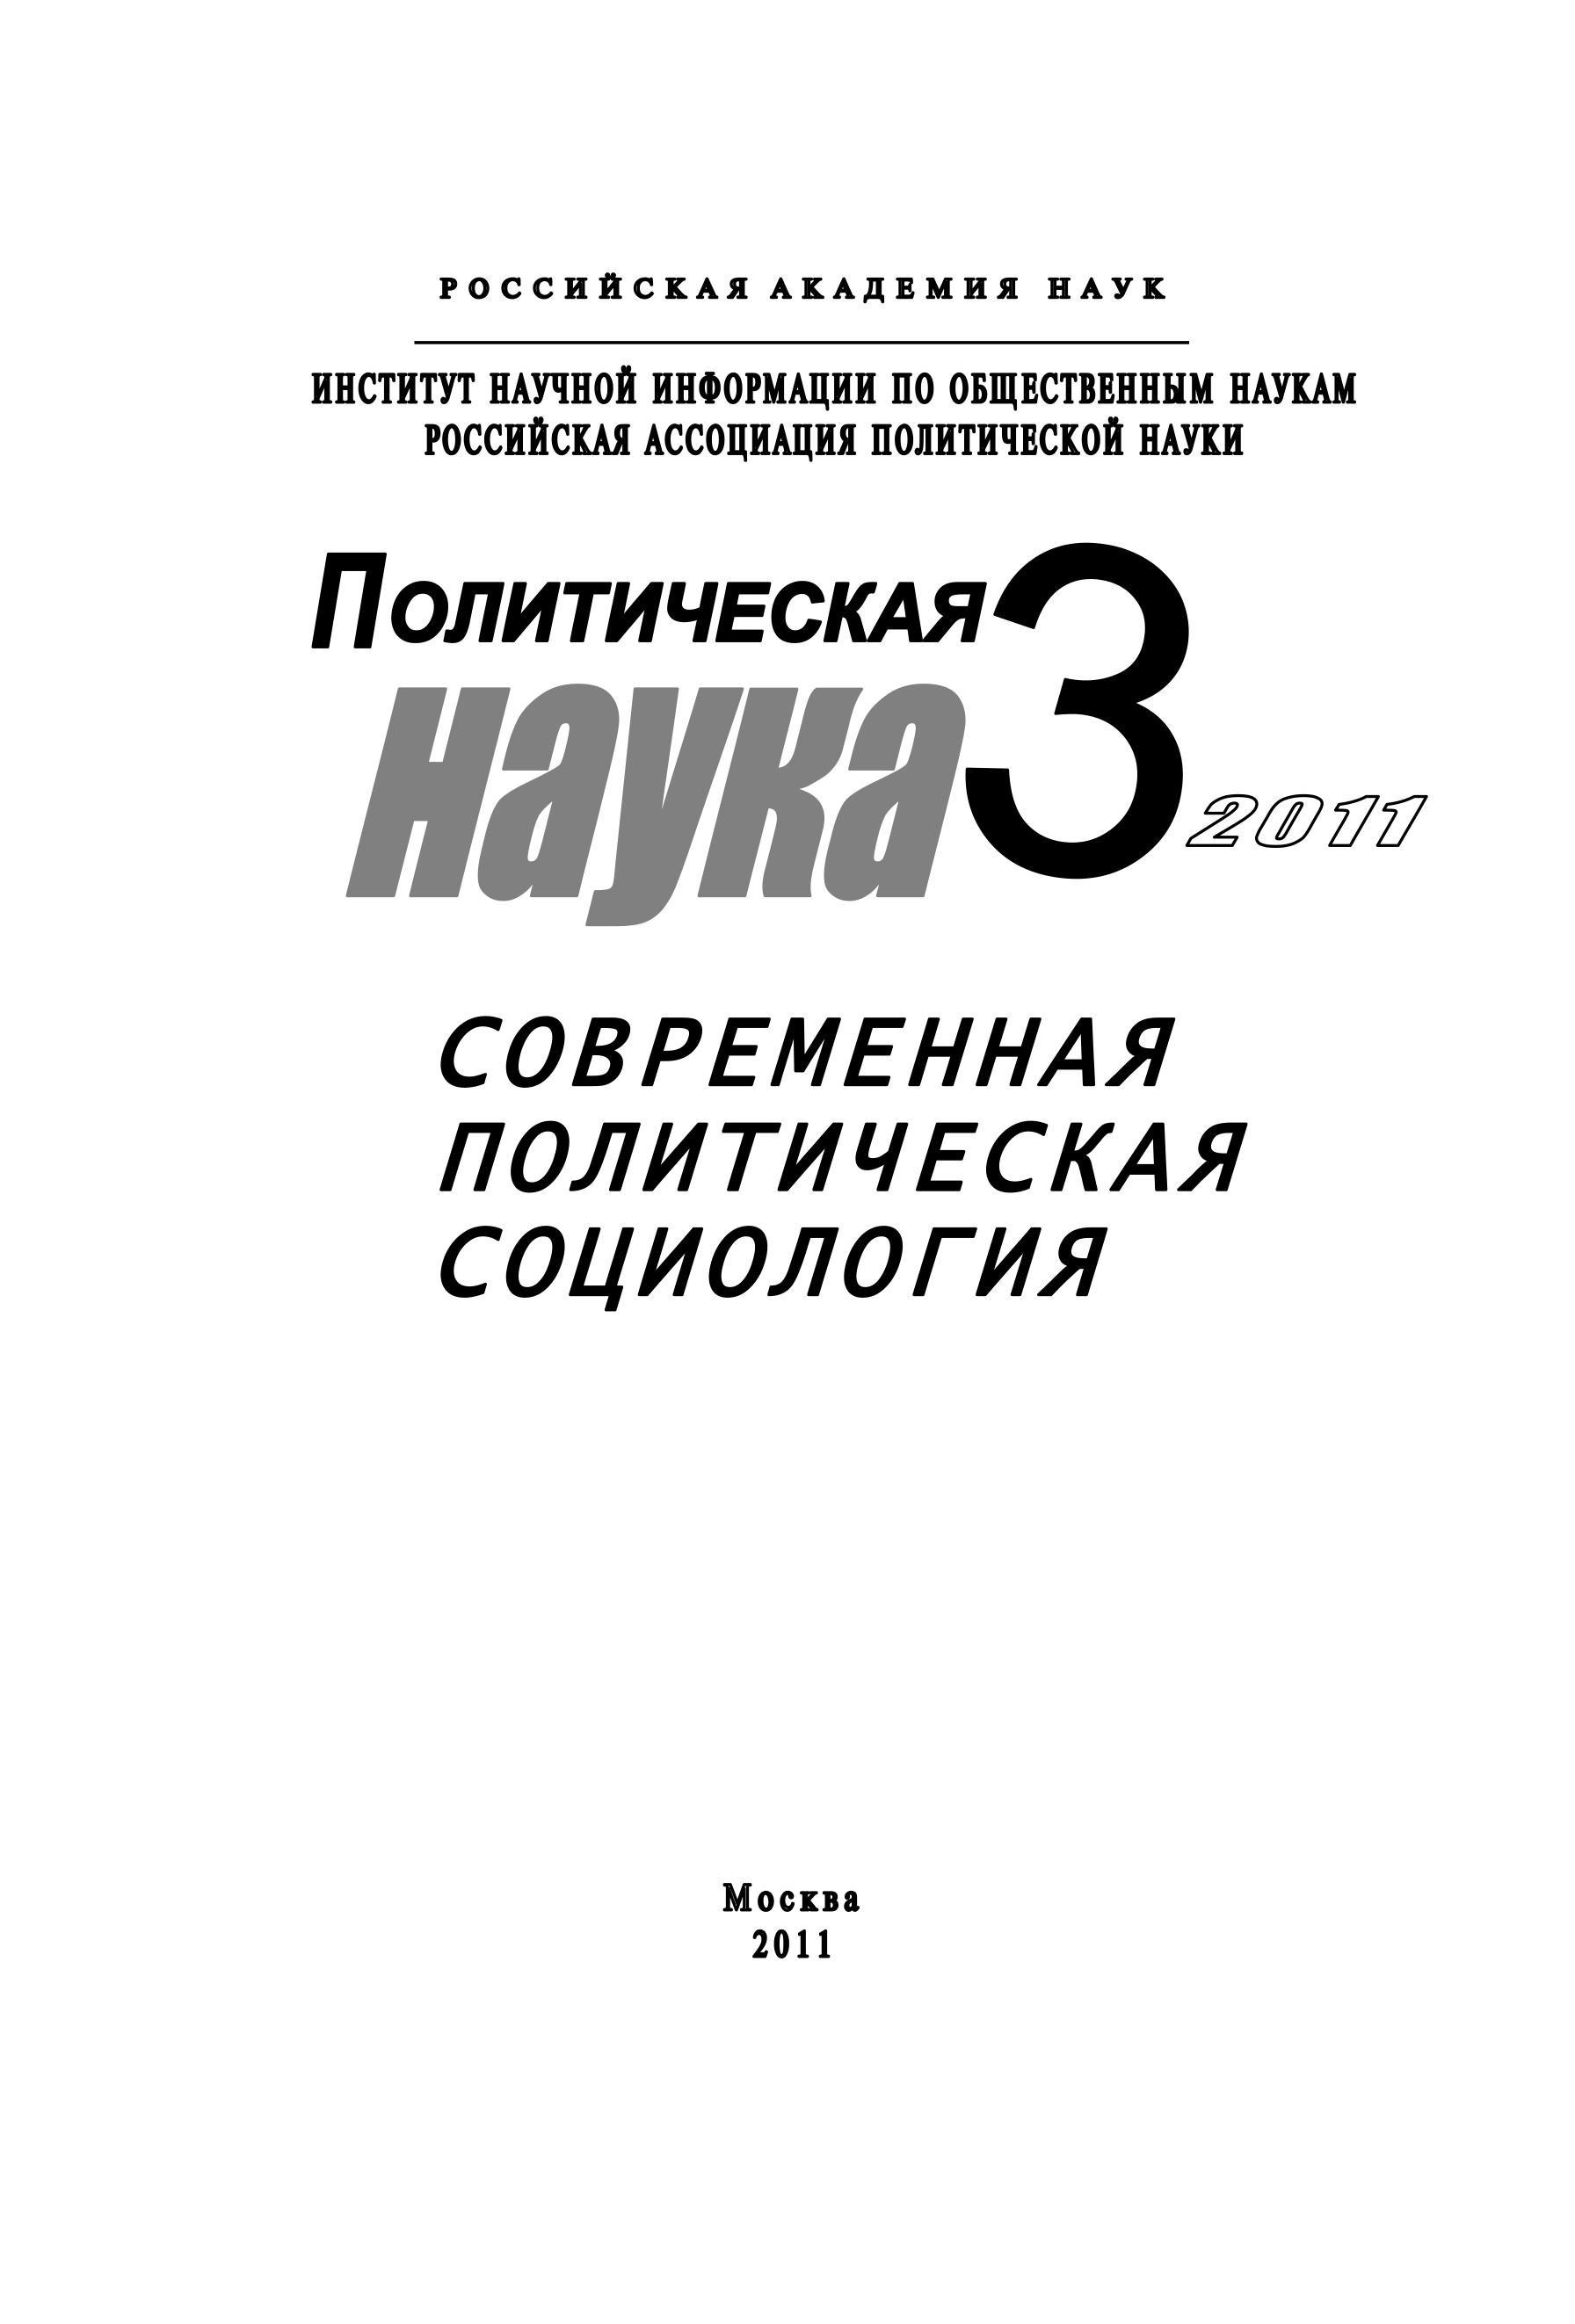 Политическая наука №3/2011 г. Современная политическая социология